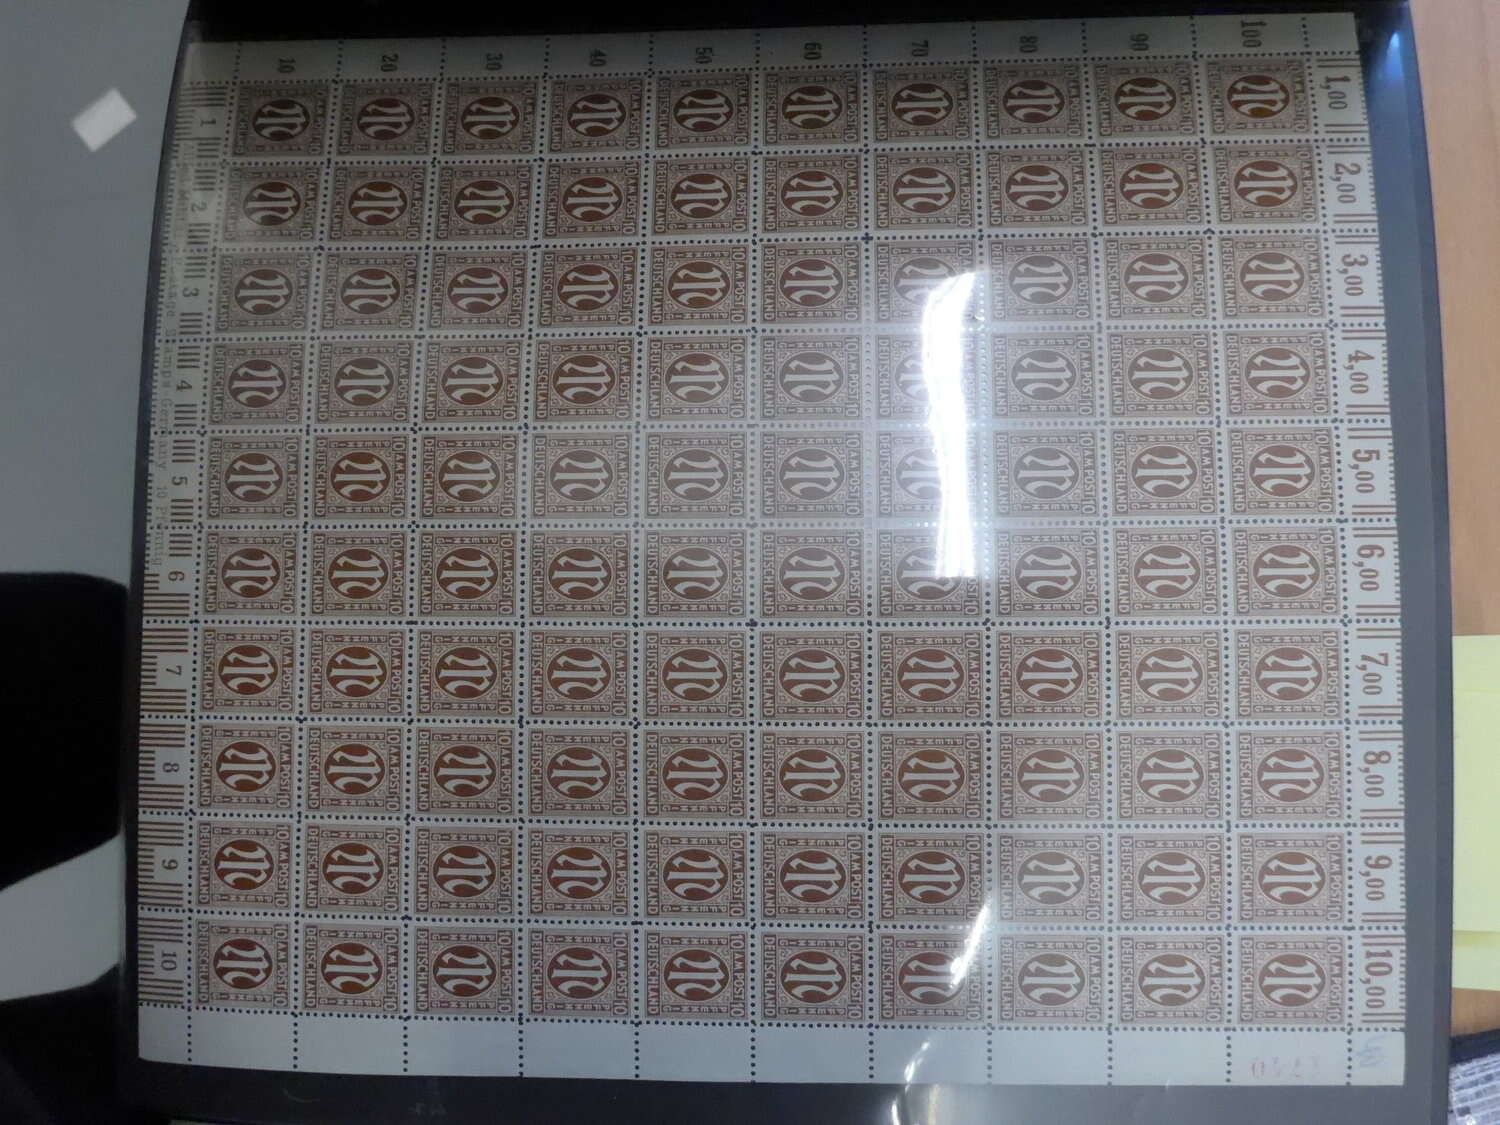 Lot 25 - sammlungen und posten sammlernachlässe -  Deutsche Briefmarken AG 6th Large Lot Auction Deutsche Briefmarken AG